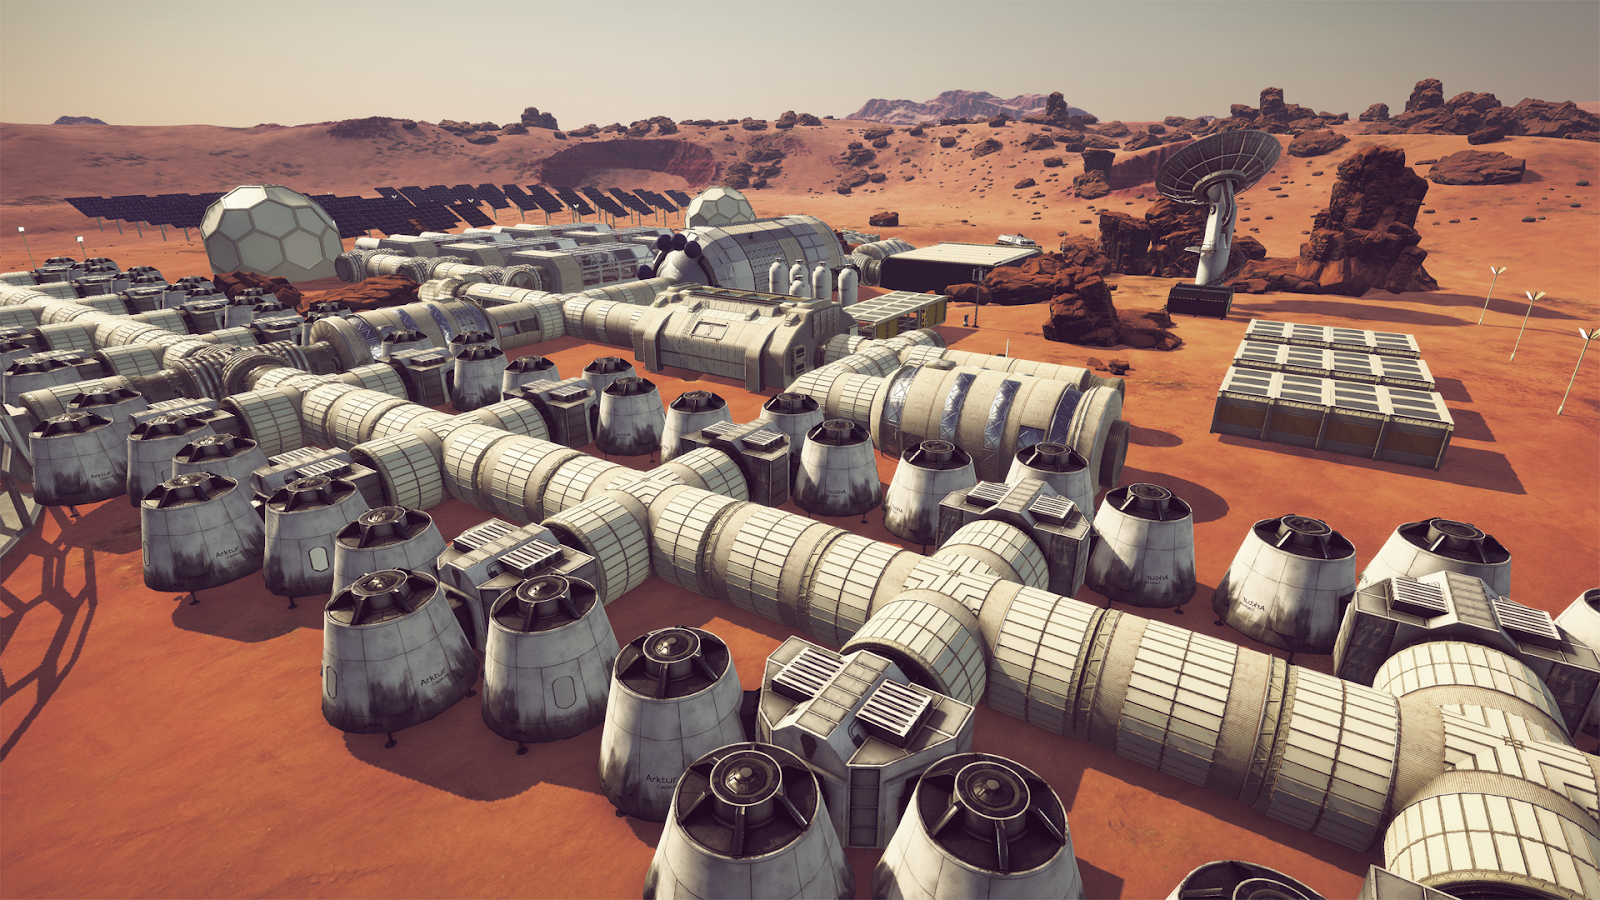 รีวิวเกม Occupy Mars : The Game เกมเอาชีวิตรอดบนดาวอังคารด้วยตัวคนเดียว3